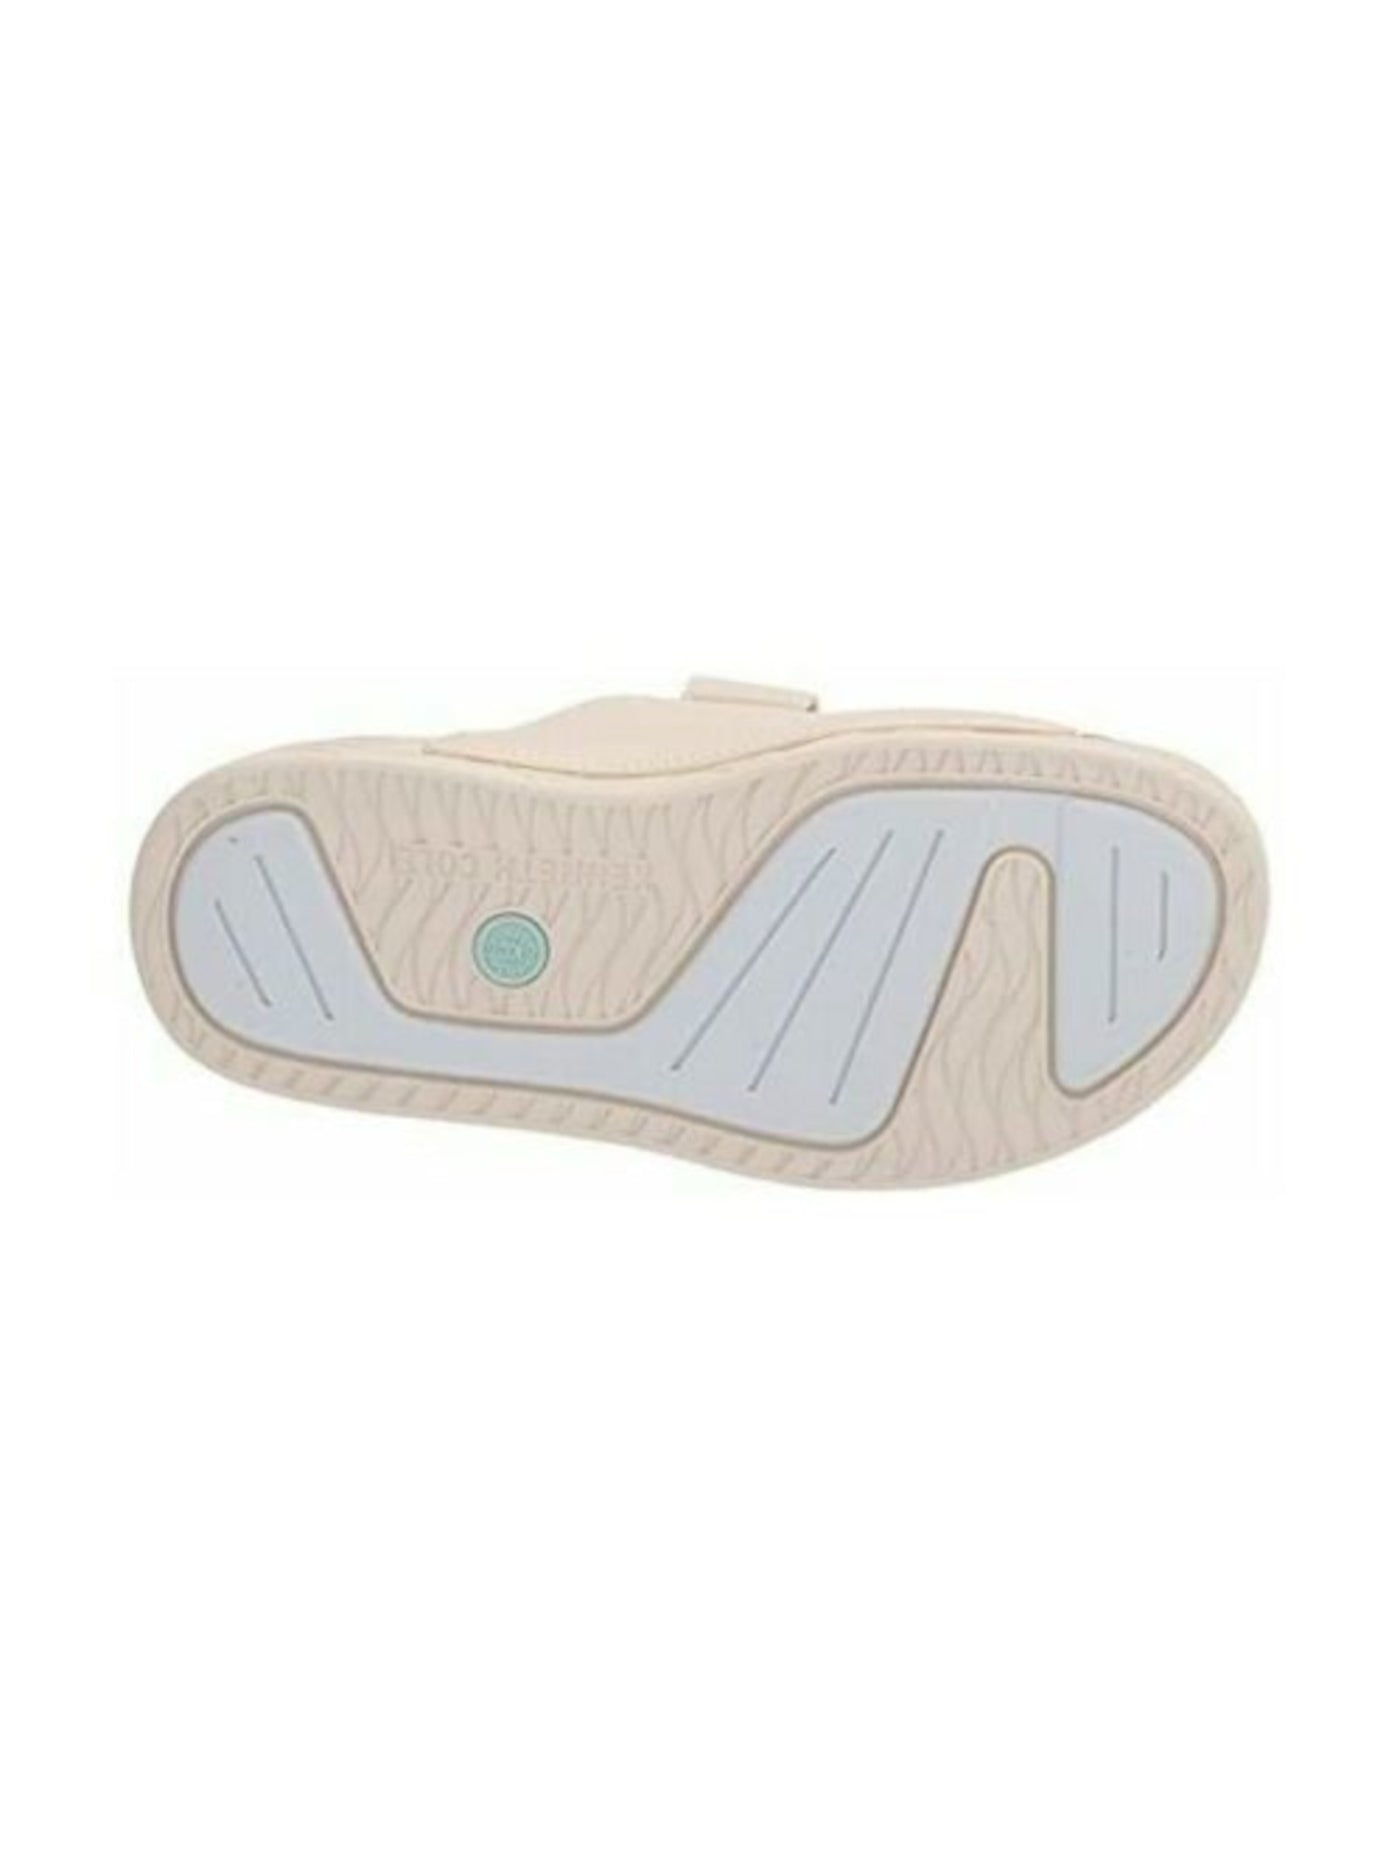 KENNETH COLE Womens Ivory Engraved Adjustable Strap Comfort Nova Round Toe Platform Slip On Slide Sandals Shoes M